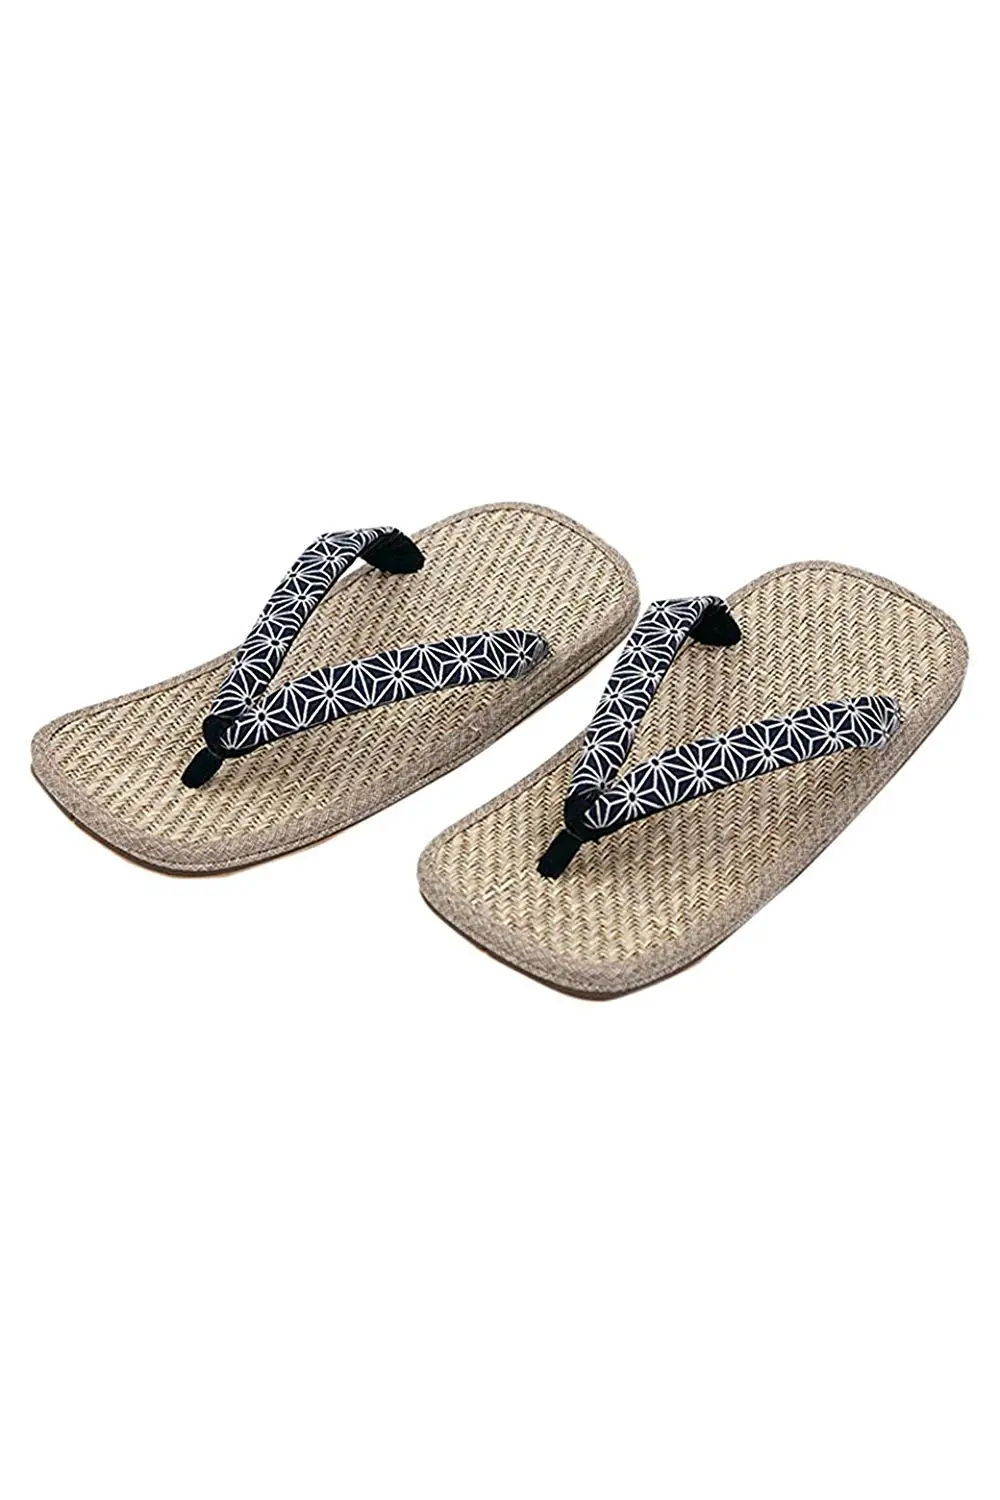 Cheap Japanese Sandals Zori, find Japanese Sandals Zori deals on line ...